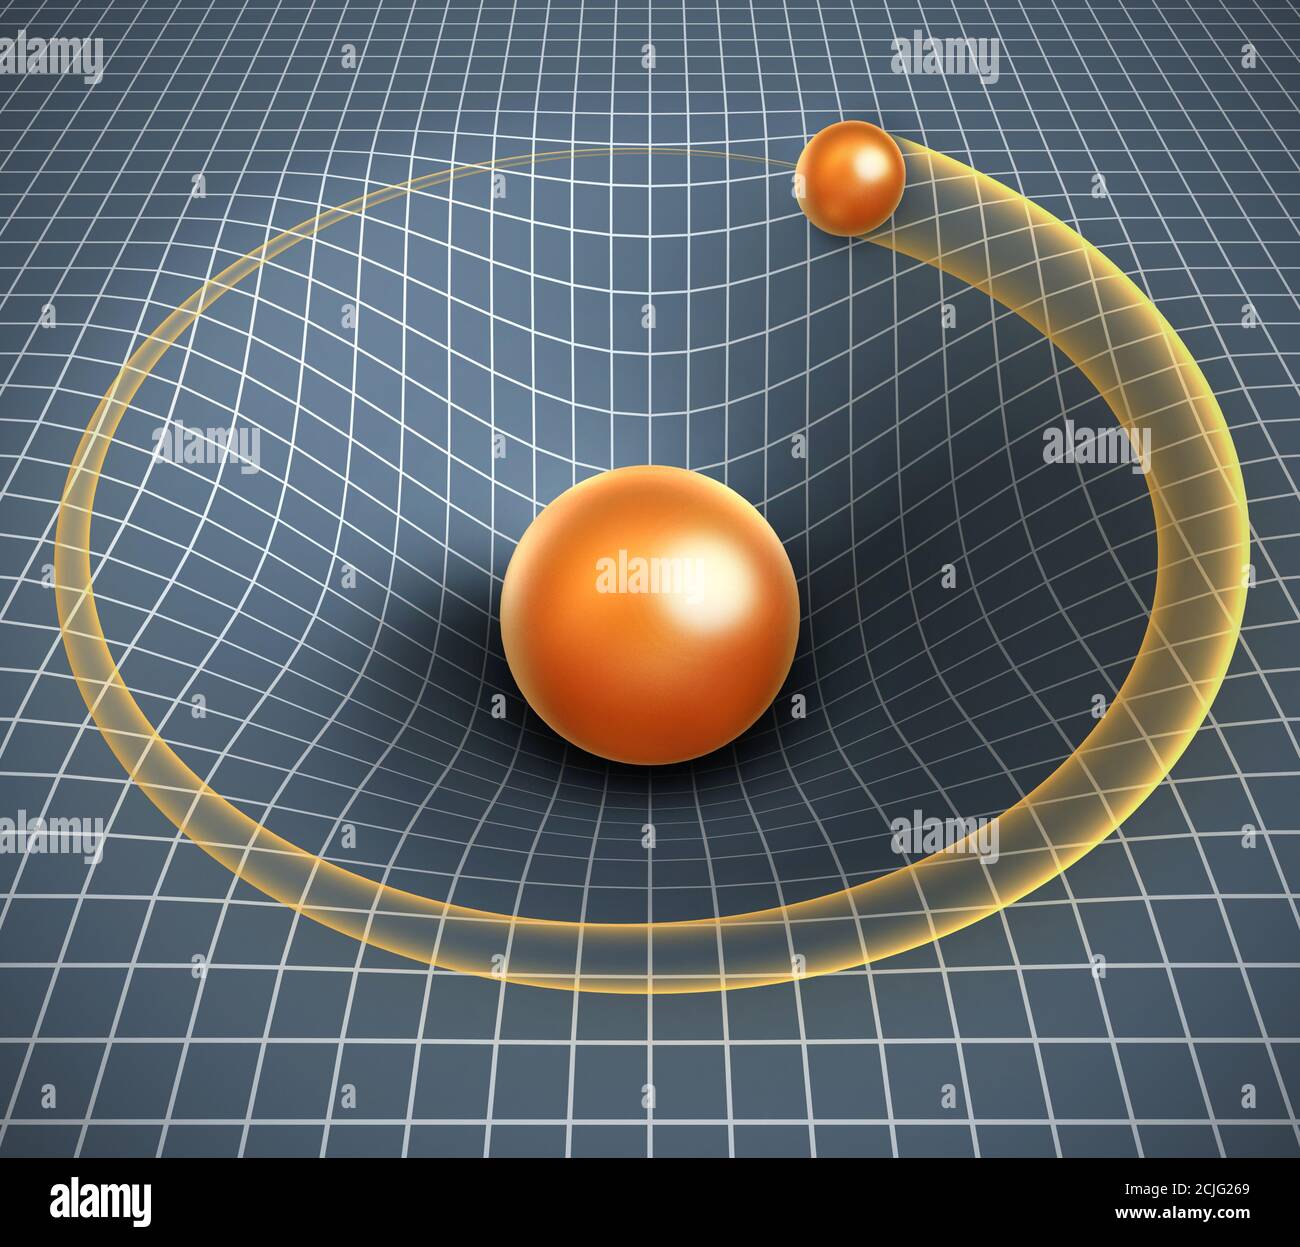 illustrazione 3d della gravità - oggetto che influisce sullo spazio / tempo e. altri oggetti in movimento Foto Stock